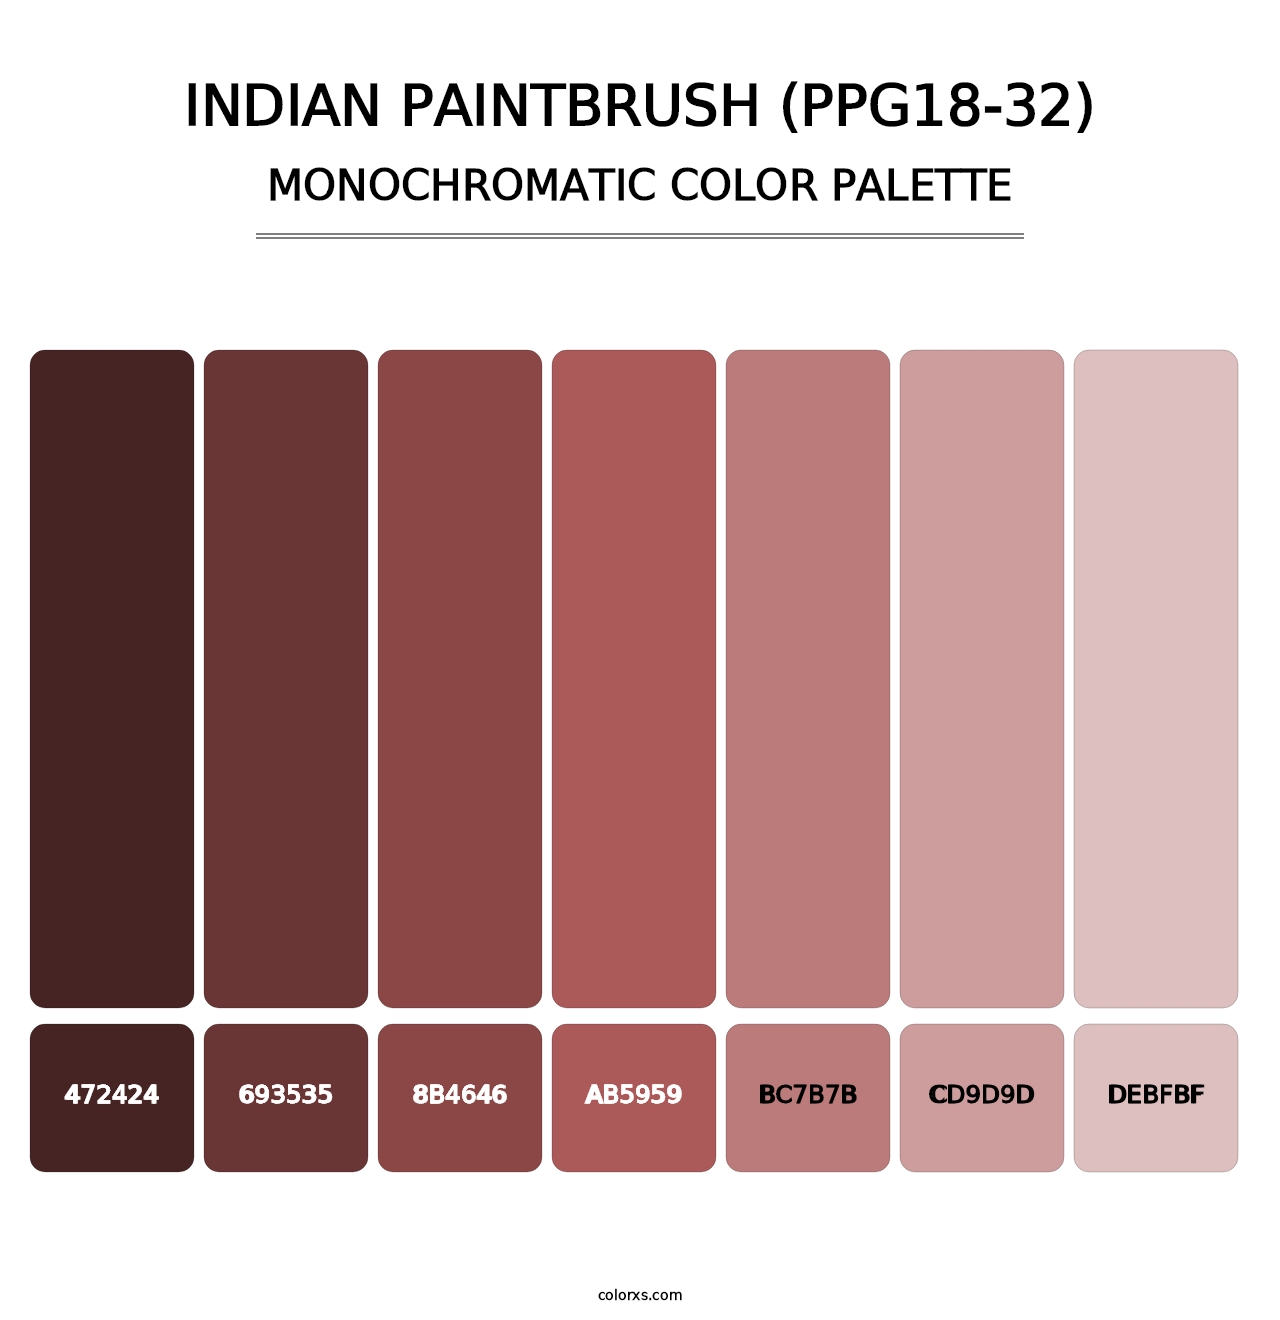 Indian Paintbrush (PPG18-32) - Monochromatic Color Palette